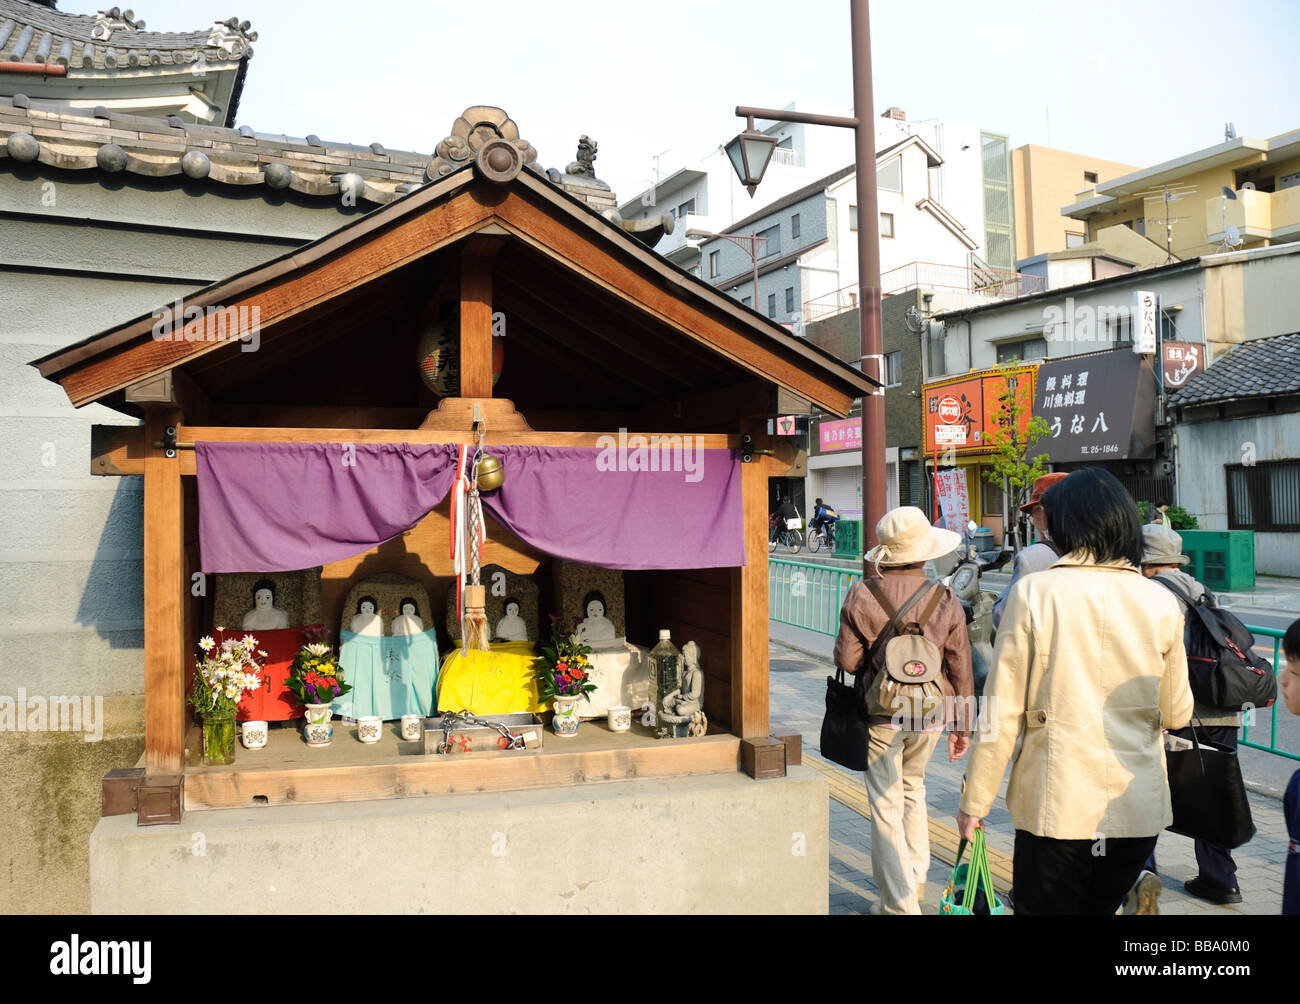 La gente passa un piccolo santuario-come struttura stradale a Ibaraki, un sobborgo di Osaka, in Giappone. Tali scene di strada sono molto tipiche. Foto Stock